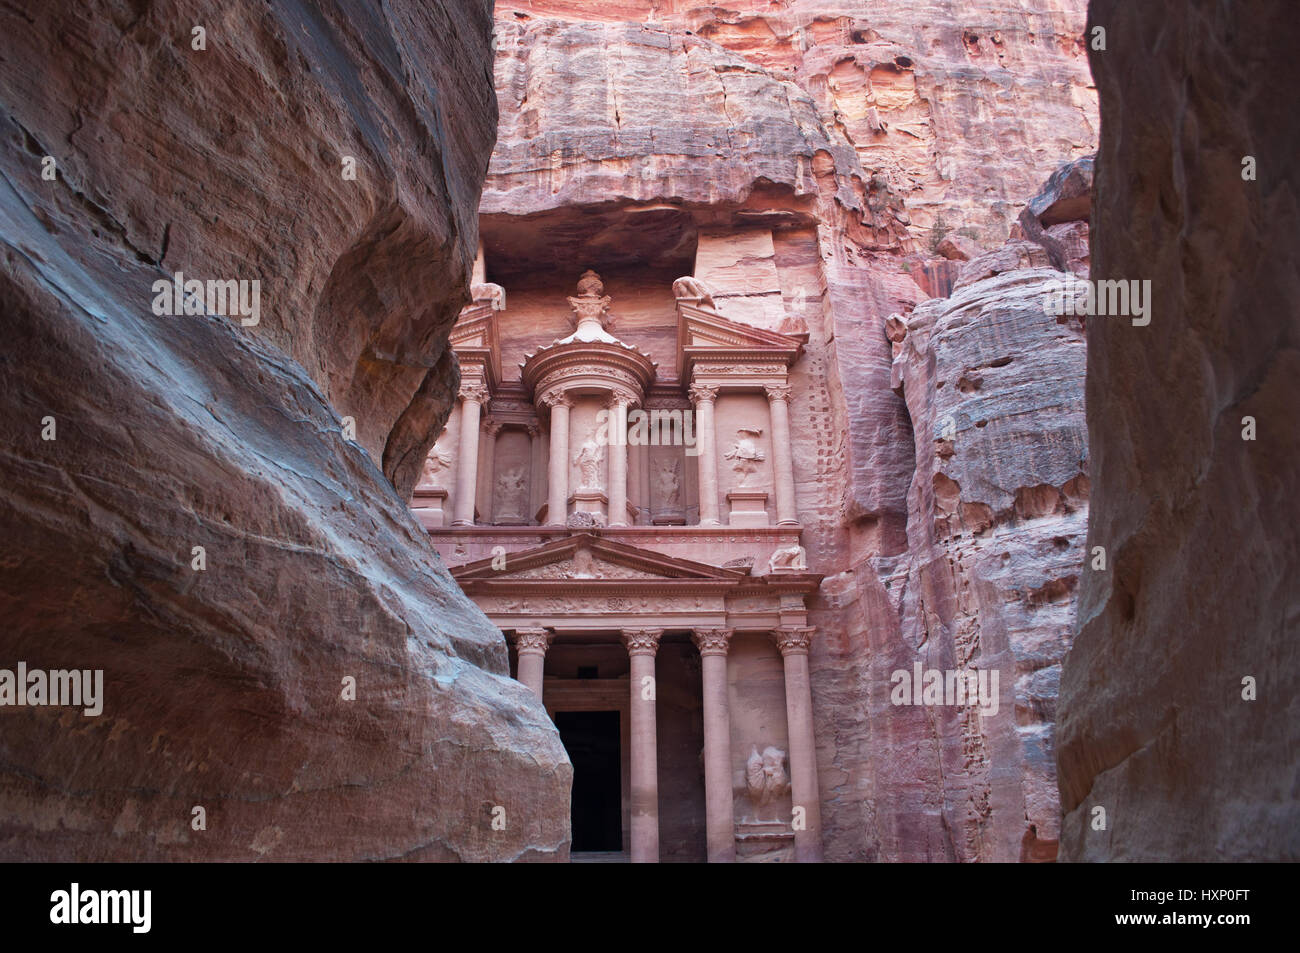 Jordanien: die Fassade des Al-Khazneh, die Schatzkammer, einer der berühmtesten Tempel in Petra gesehen Trog die Felsen des Siq, der Haupteingang canyon Stockfoto